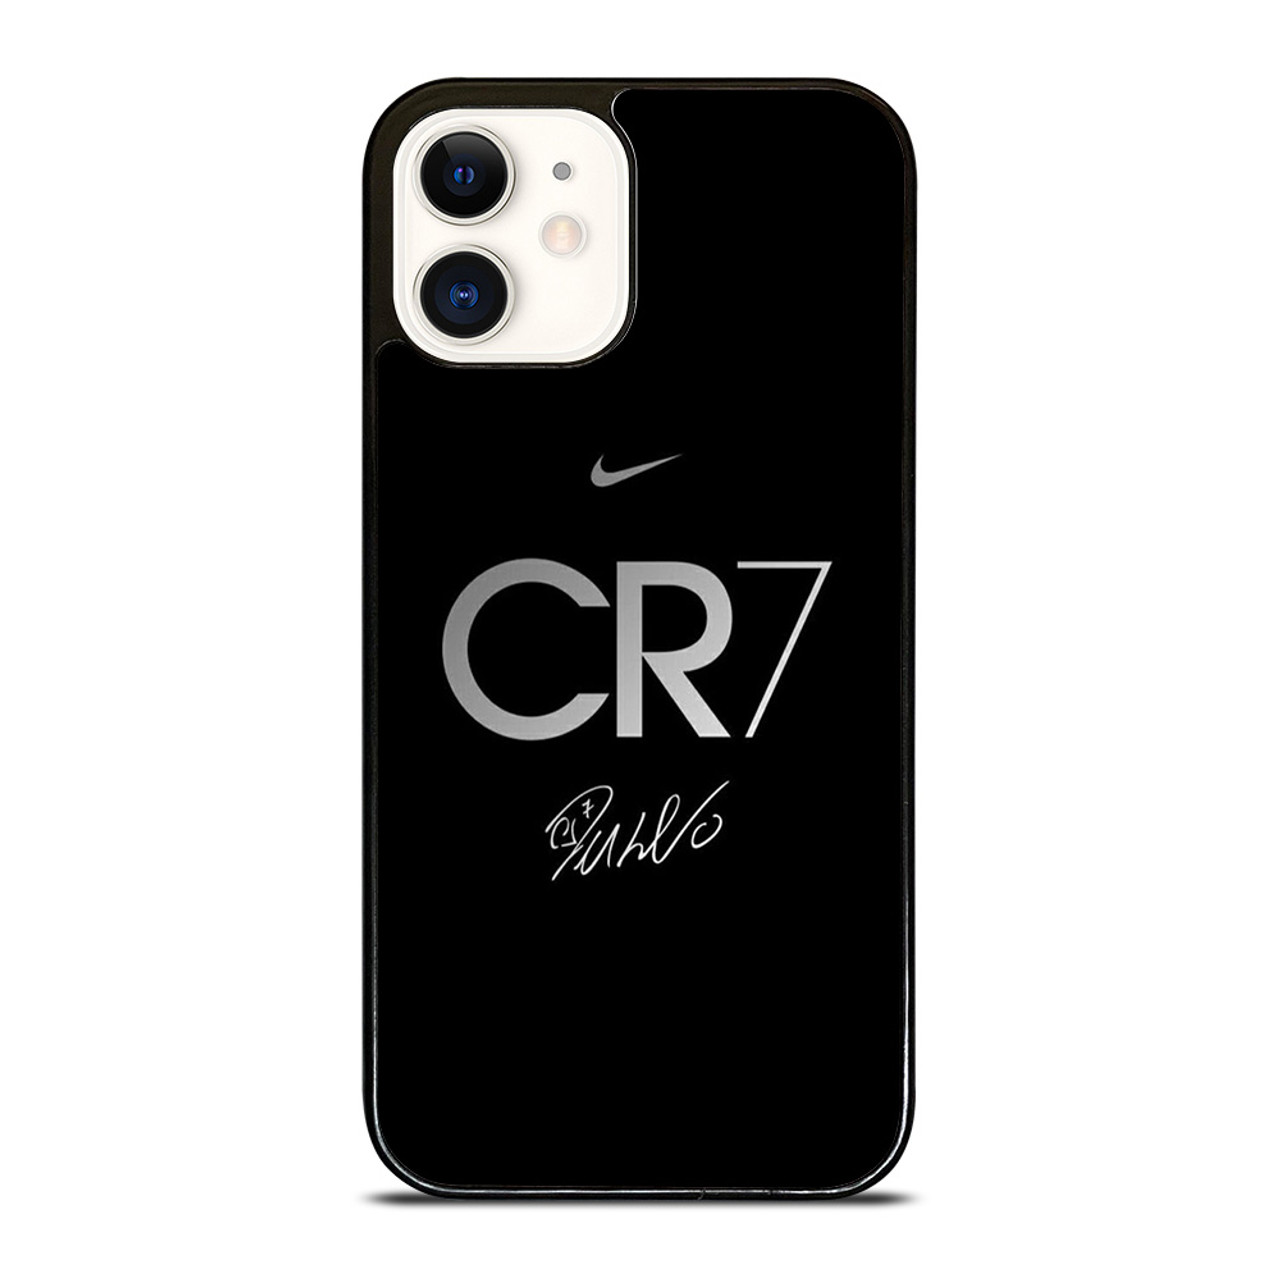 CRISTIANO RONALDO CR7 5 iPhone 12 Pro Max Case Cover